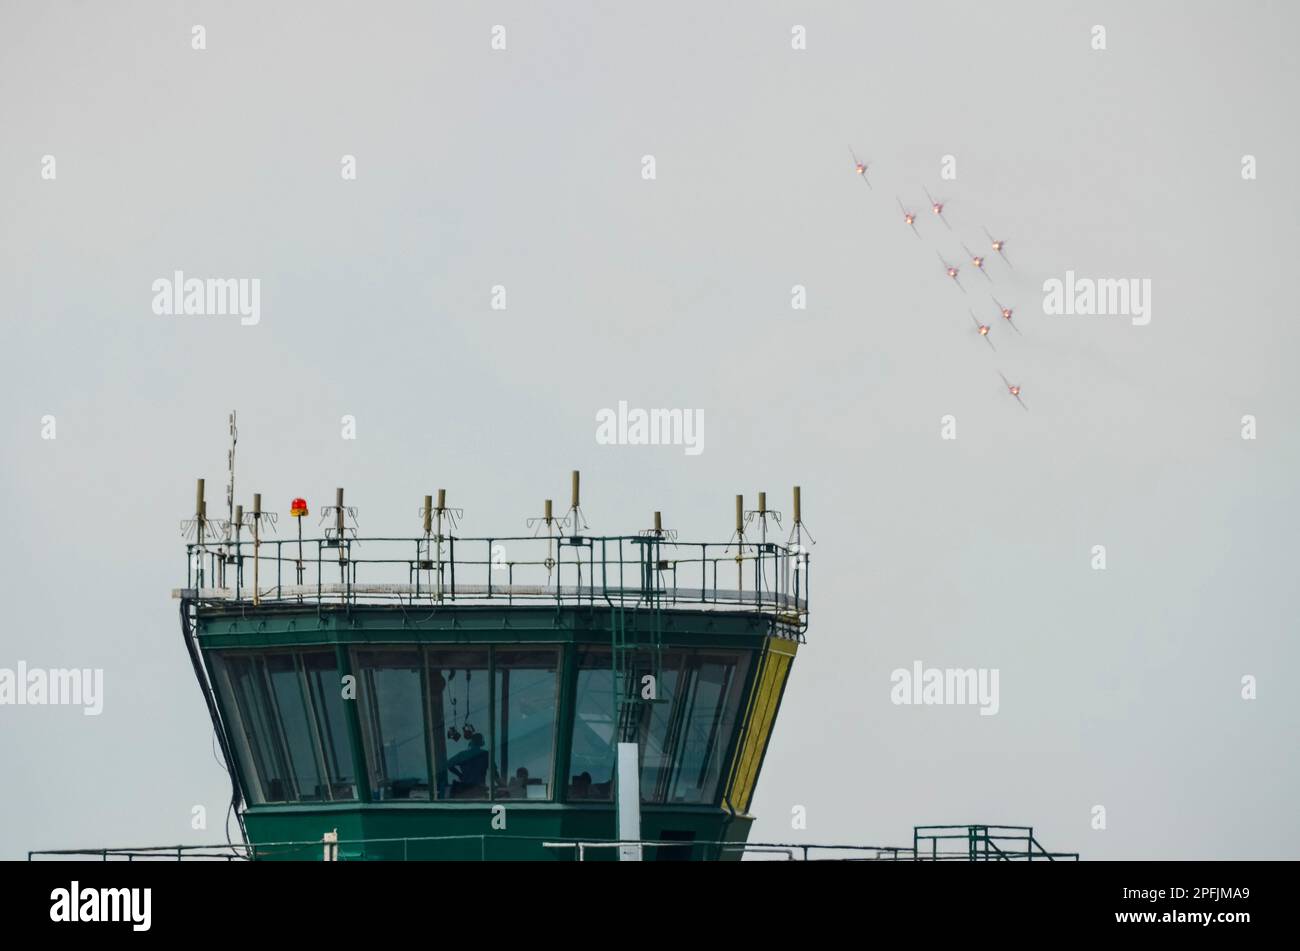 Royal Air Force Red Arrows mostra il team BAe Hawk T1 aerei a reazione che espongono al RAF Scampton, sopra la torre di controllo del traffico aereo. Guarda l'ufficio Foto Stock